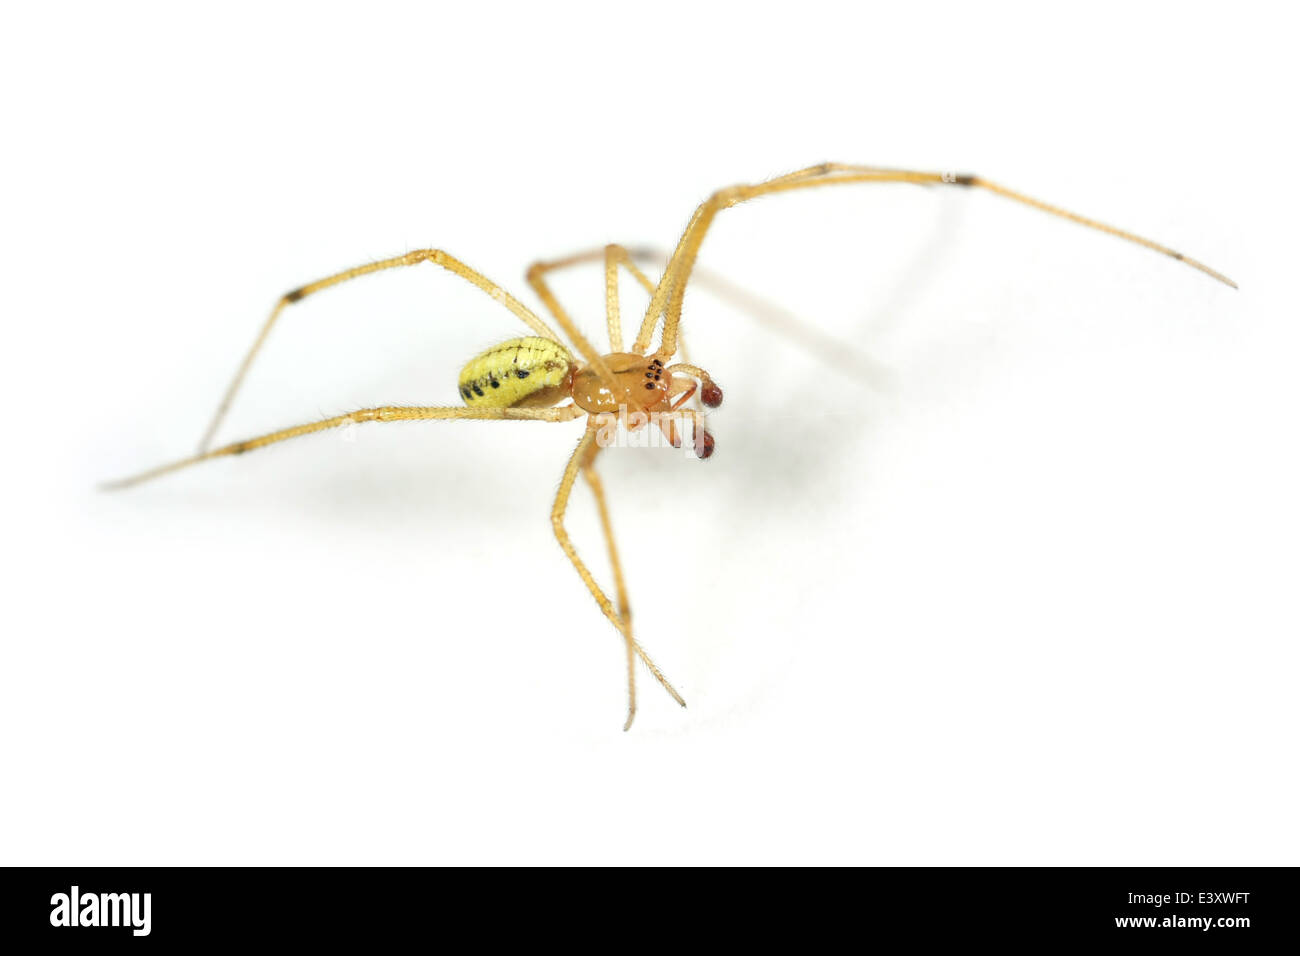 Männliche Candystripe oder Polymorphic Spider (Enoplognatha Ovata), Teil der Familie Theridiidae - Spinnennetz Weber. Isoliert auf weiss. Stockfoto